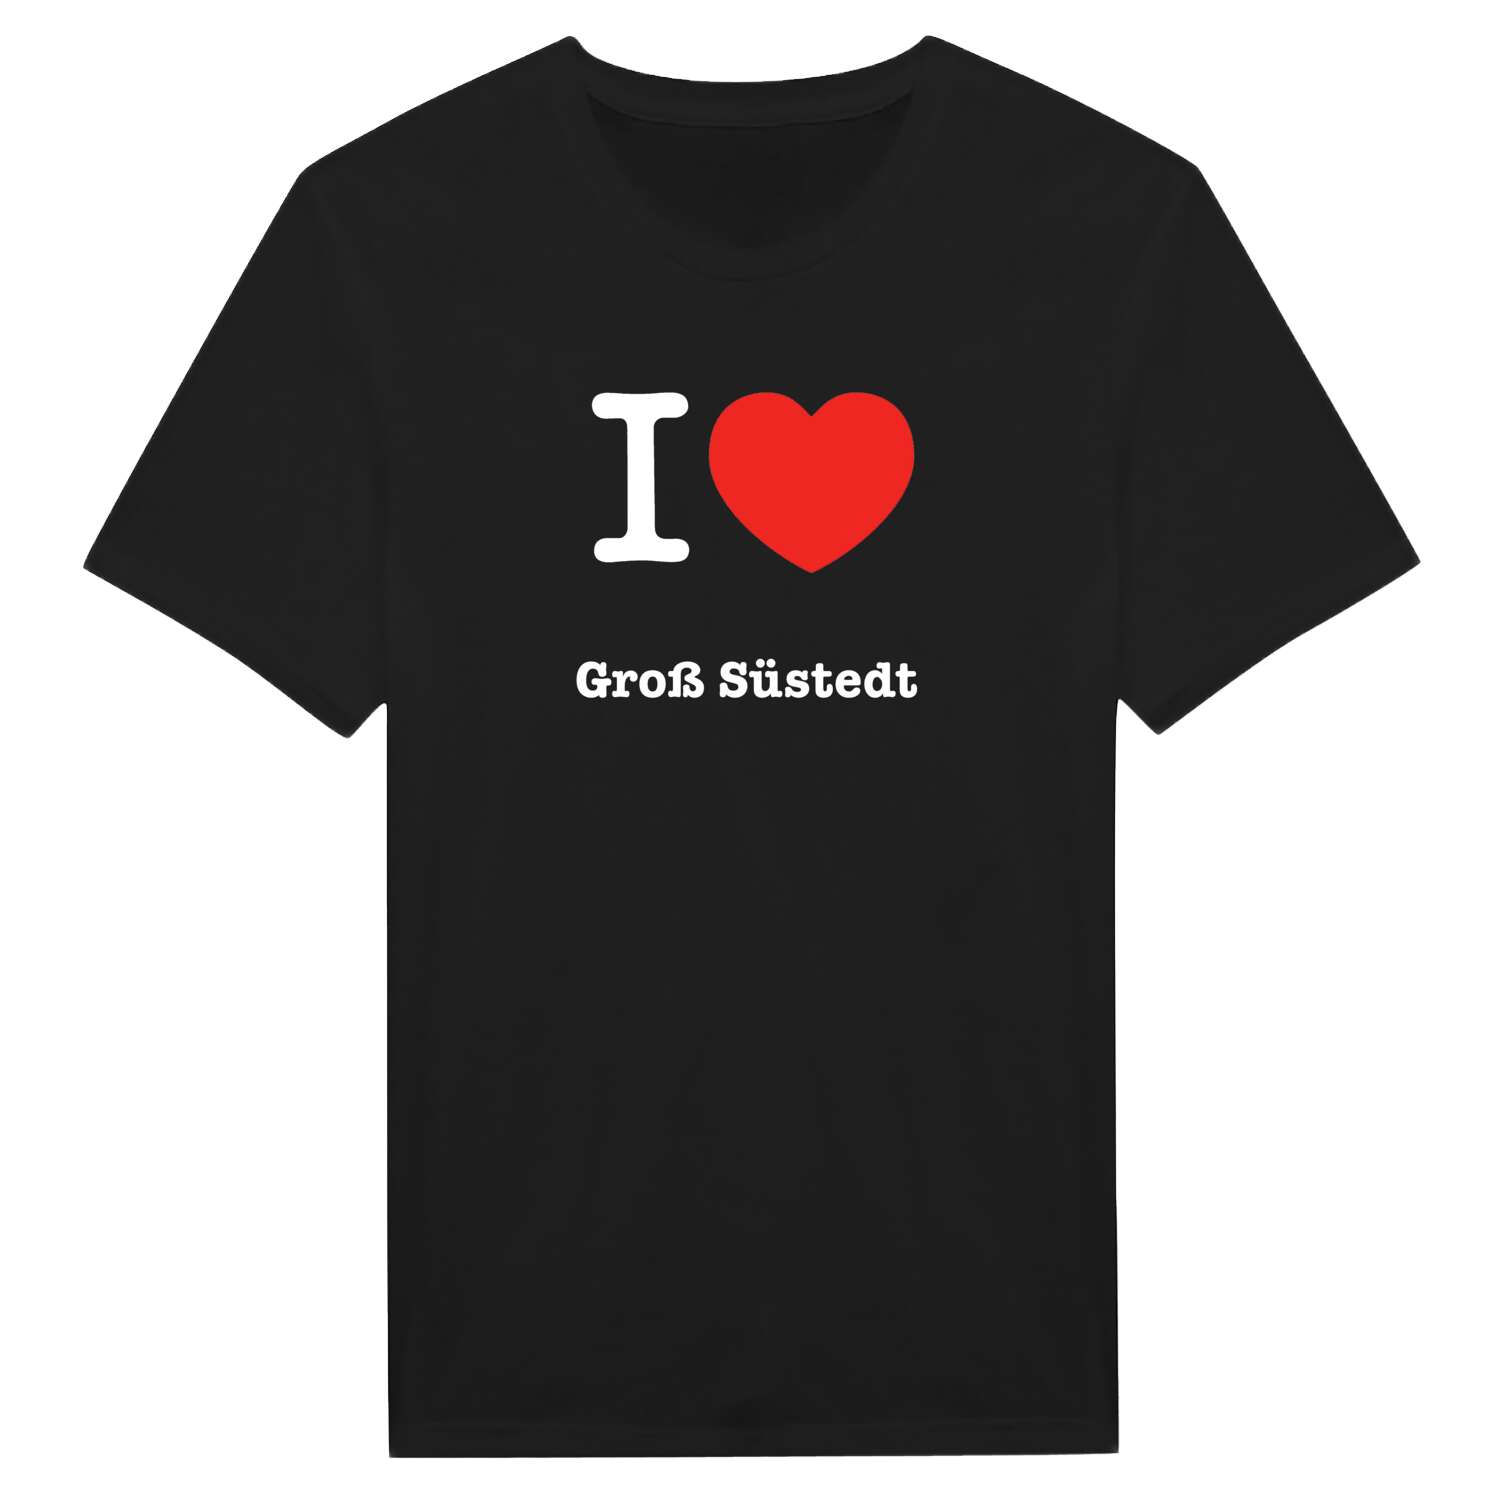 Groß Süstedt T-Shirt »I love«